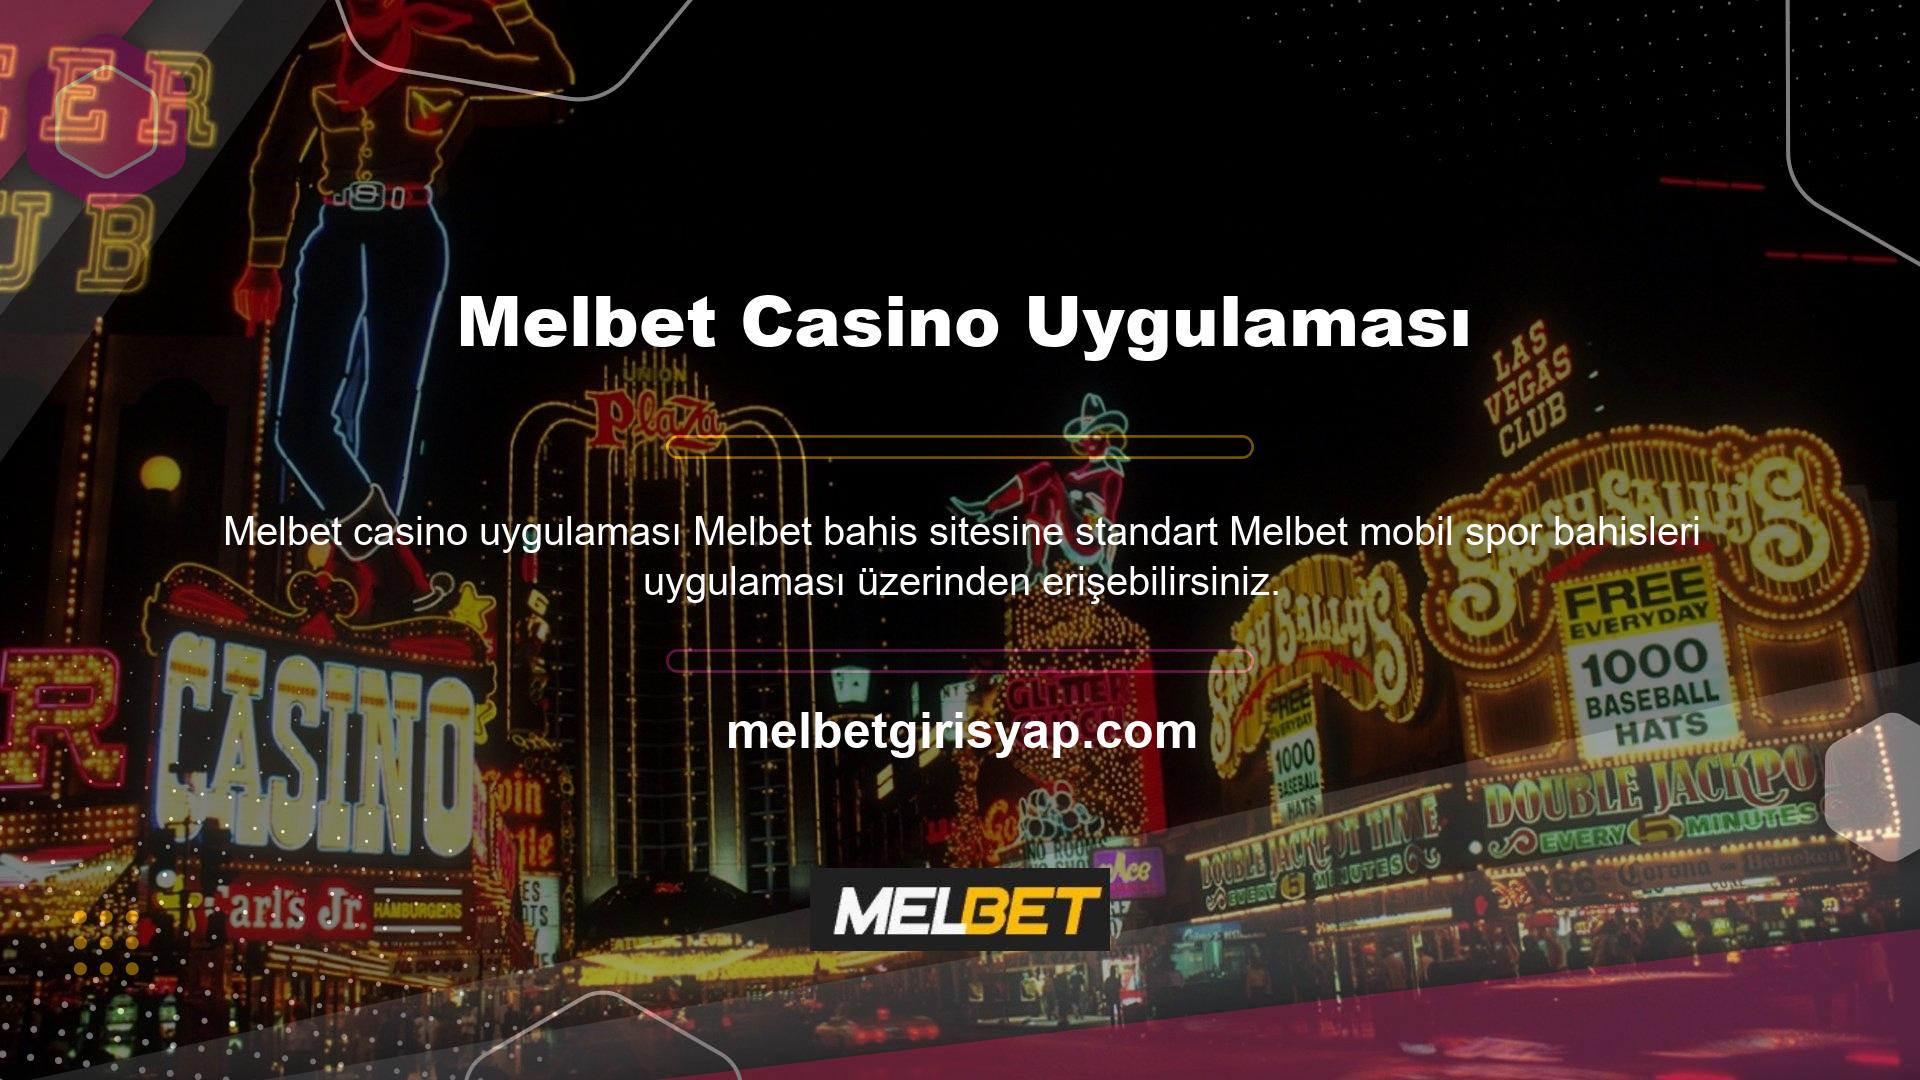 Alternatif olarak, "oyun sektörünün lider mobil casino platformu" olduğu söylenen Melbet özel casino uygulamasını da indirebilirsiniz